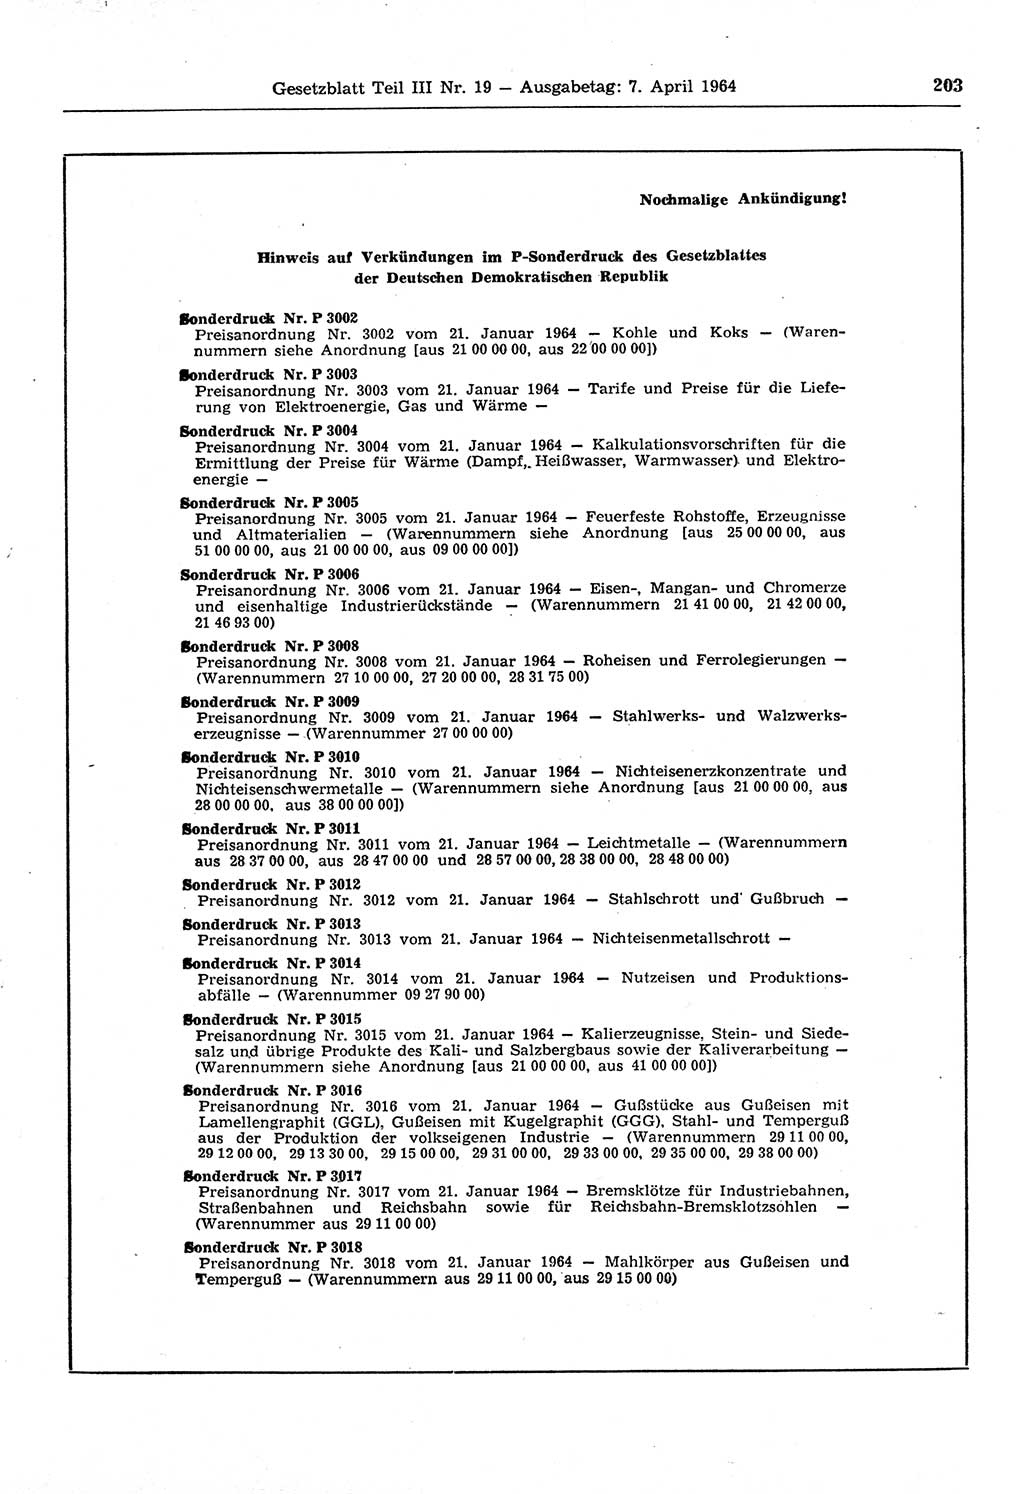 Gesetzblatt (GBl.) der Deutschen Demokratischen Republik (DDR) Teil ⅠⅠⅠ 1964, Seite 203 (GBl. DDR ⅠⅠⅠ 1964, S. 203)